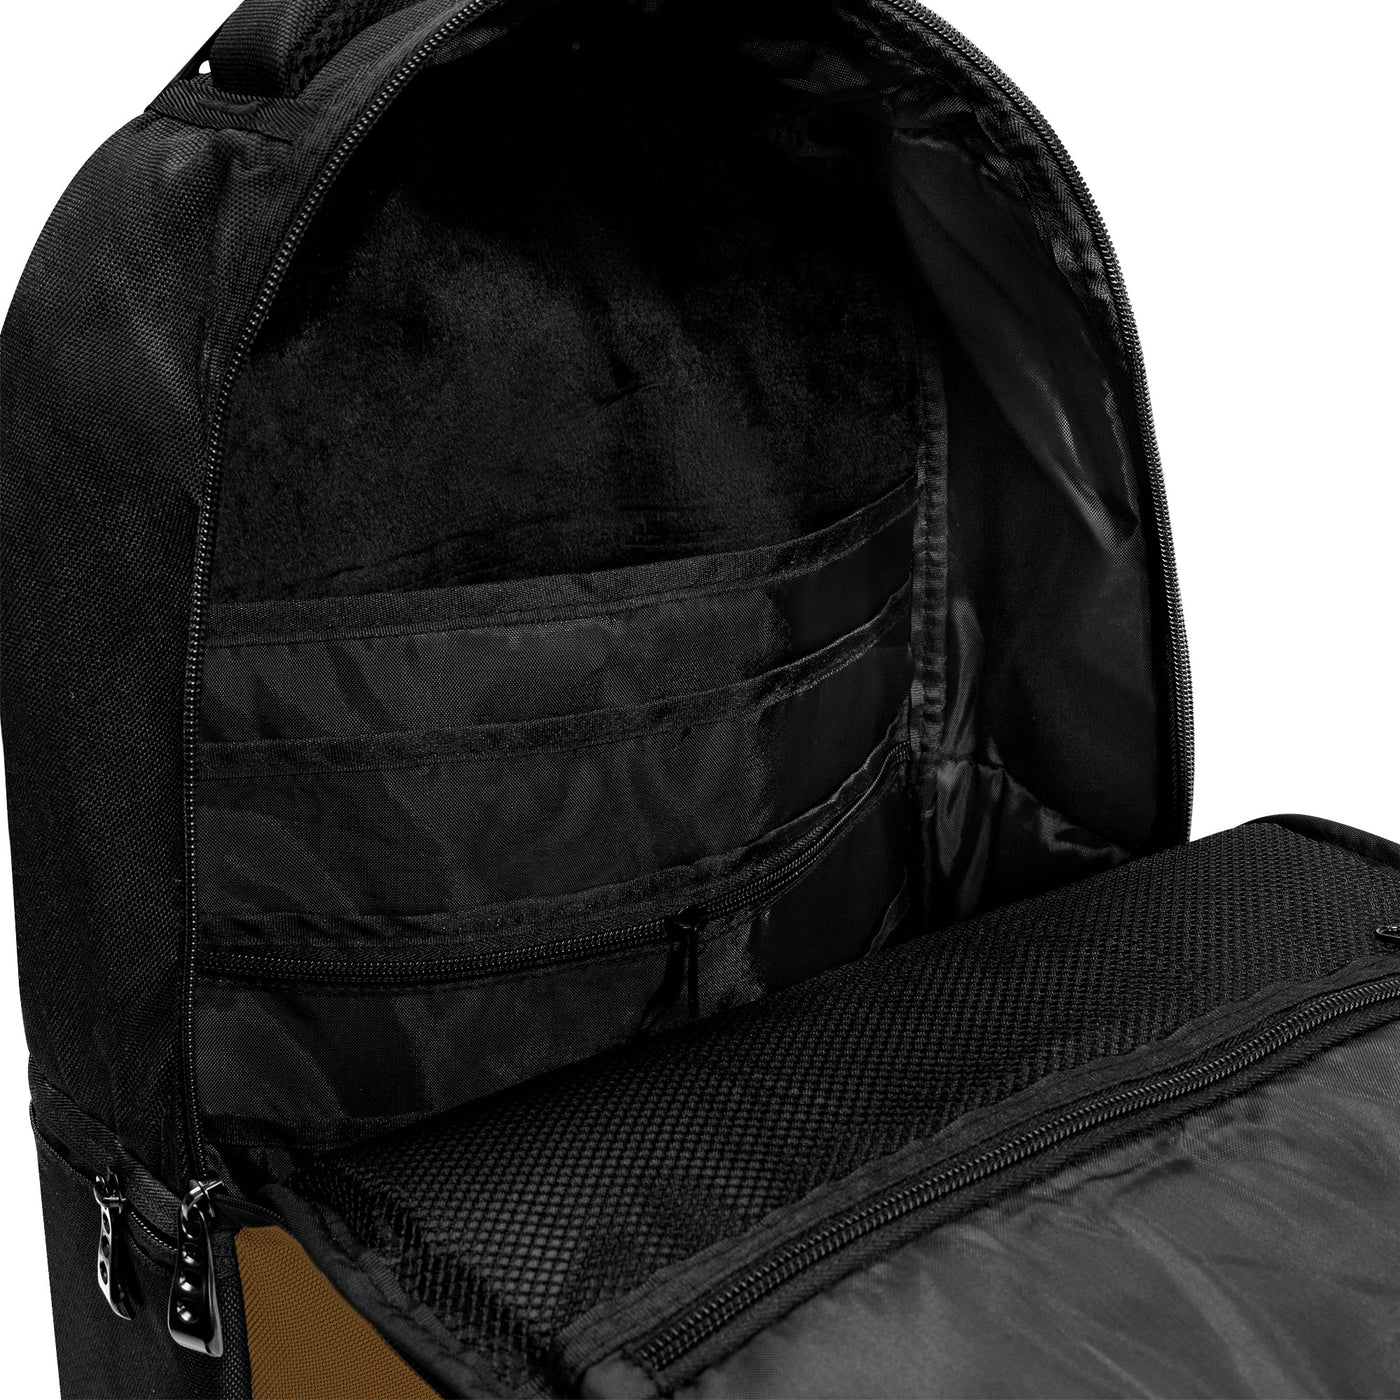 Forever Drift Laptop Backpack - Brown